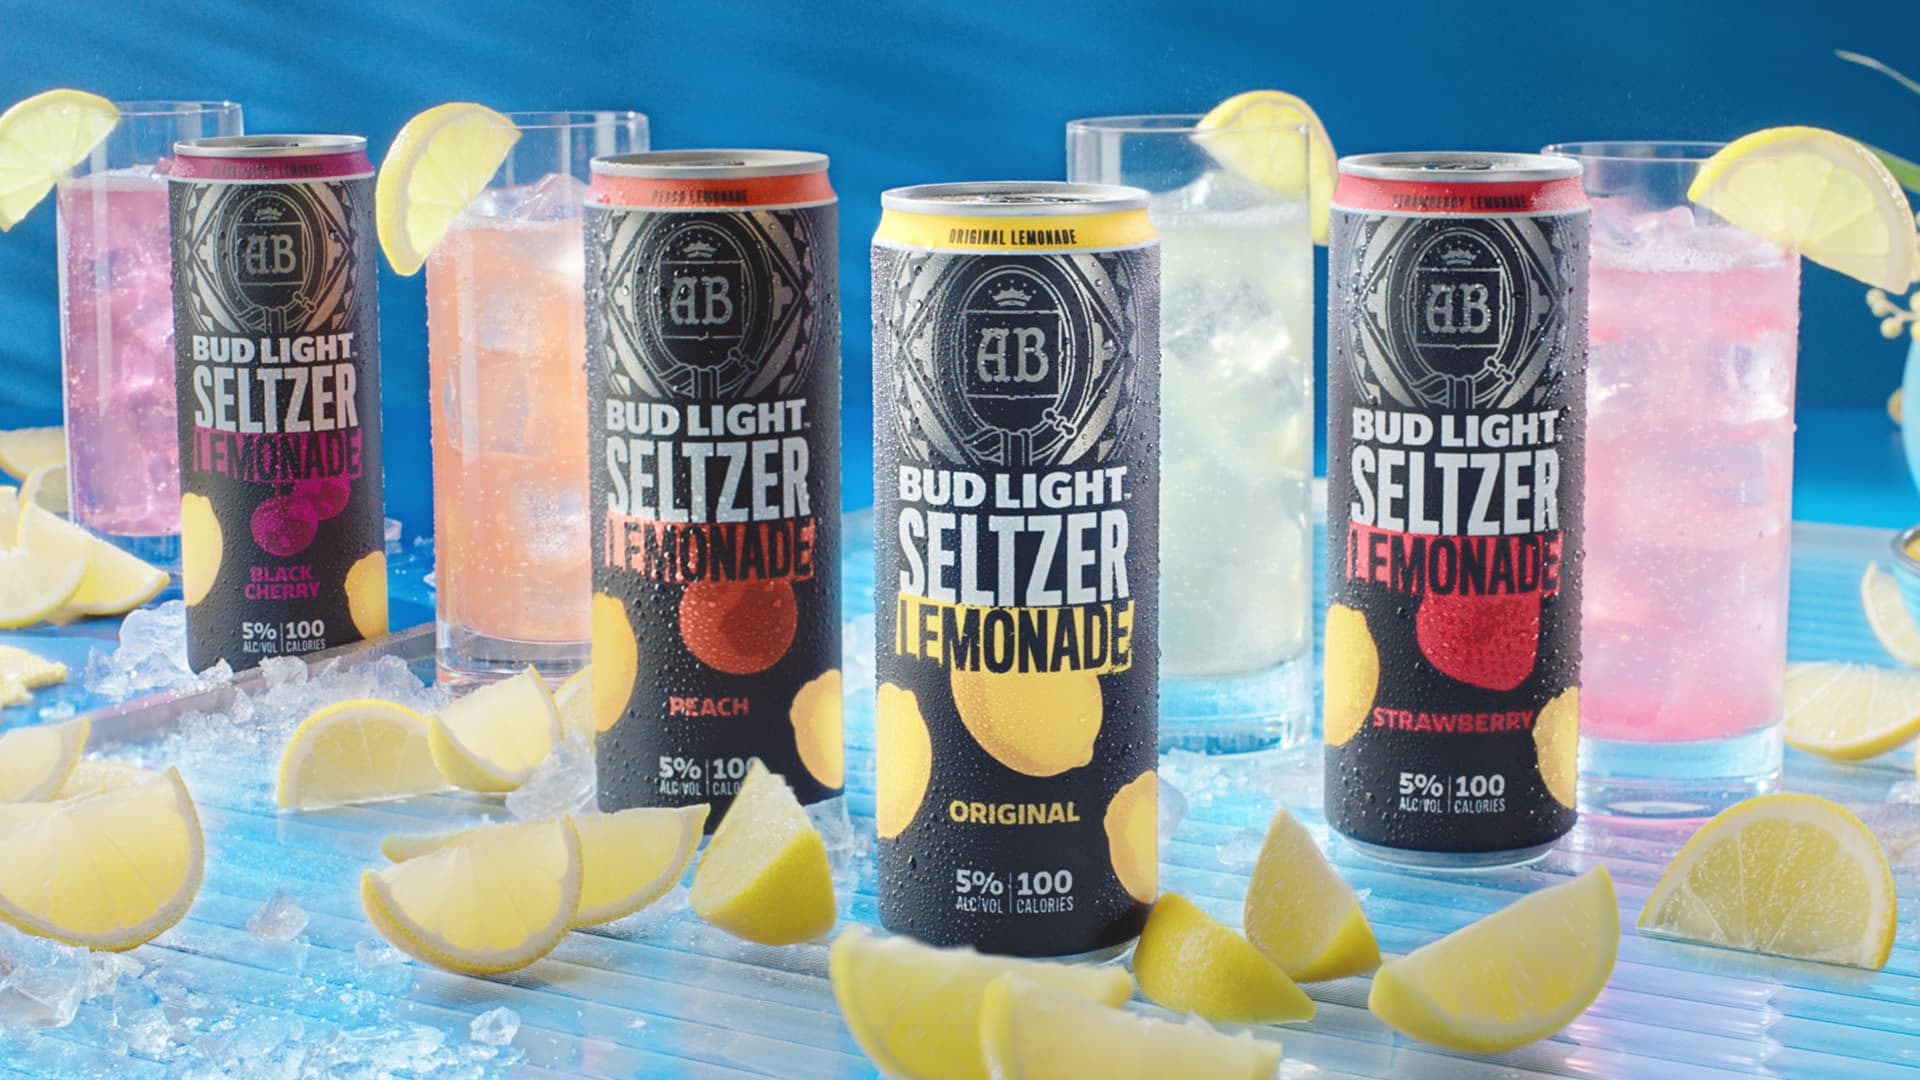 All four flavors of Bud Light Seltzer Lemonade